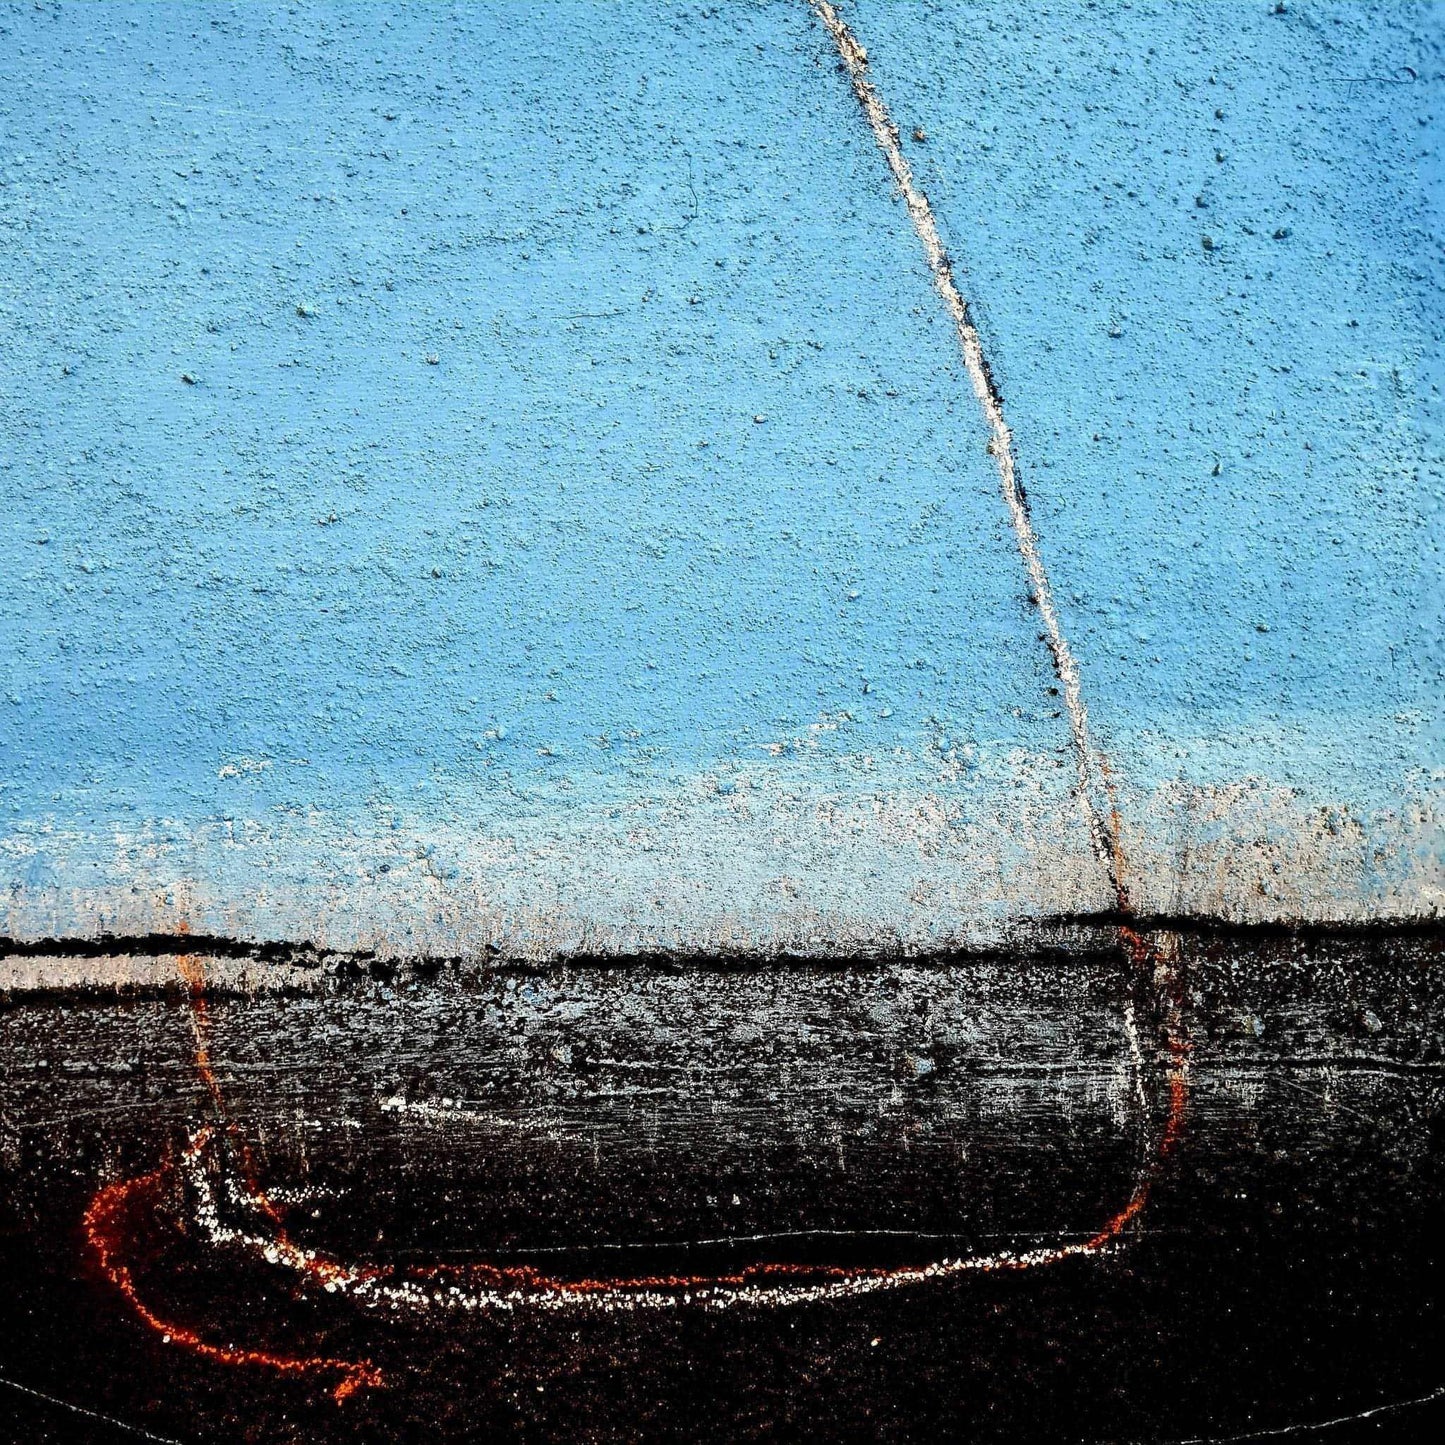 VORHANDEN / Blaues Bild mit Segelschiff / 50 x 40 cm Abstrakte Bilder & moderne Auftragsmalerei, abstrakte große bilder online kaufen, Auftrags Malere